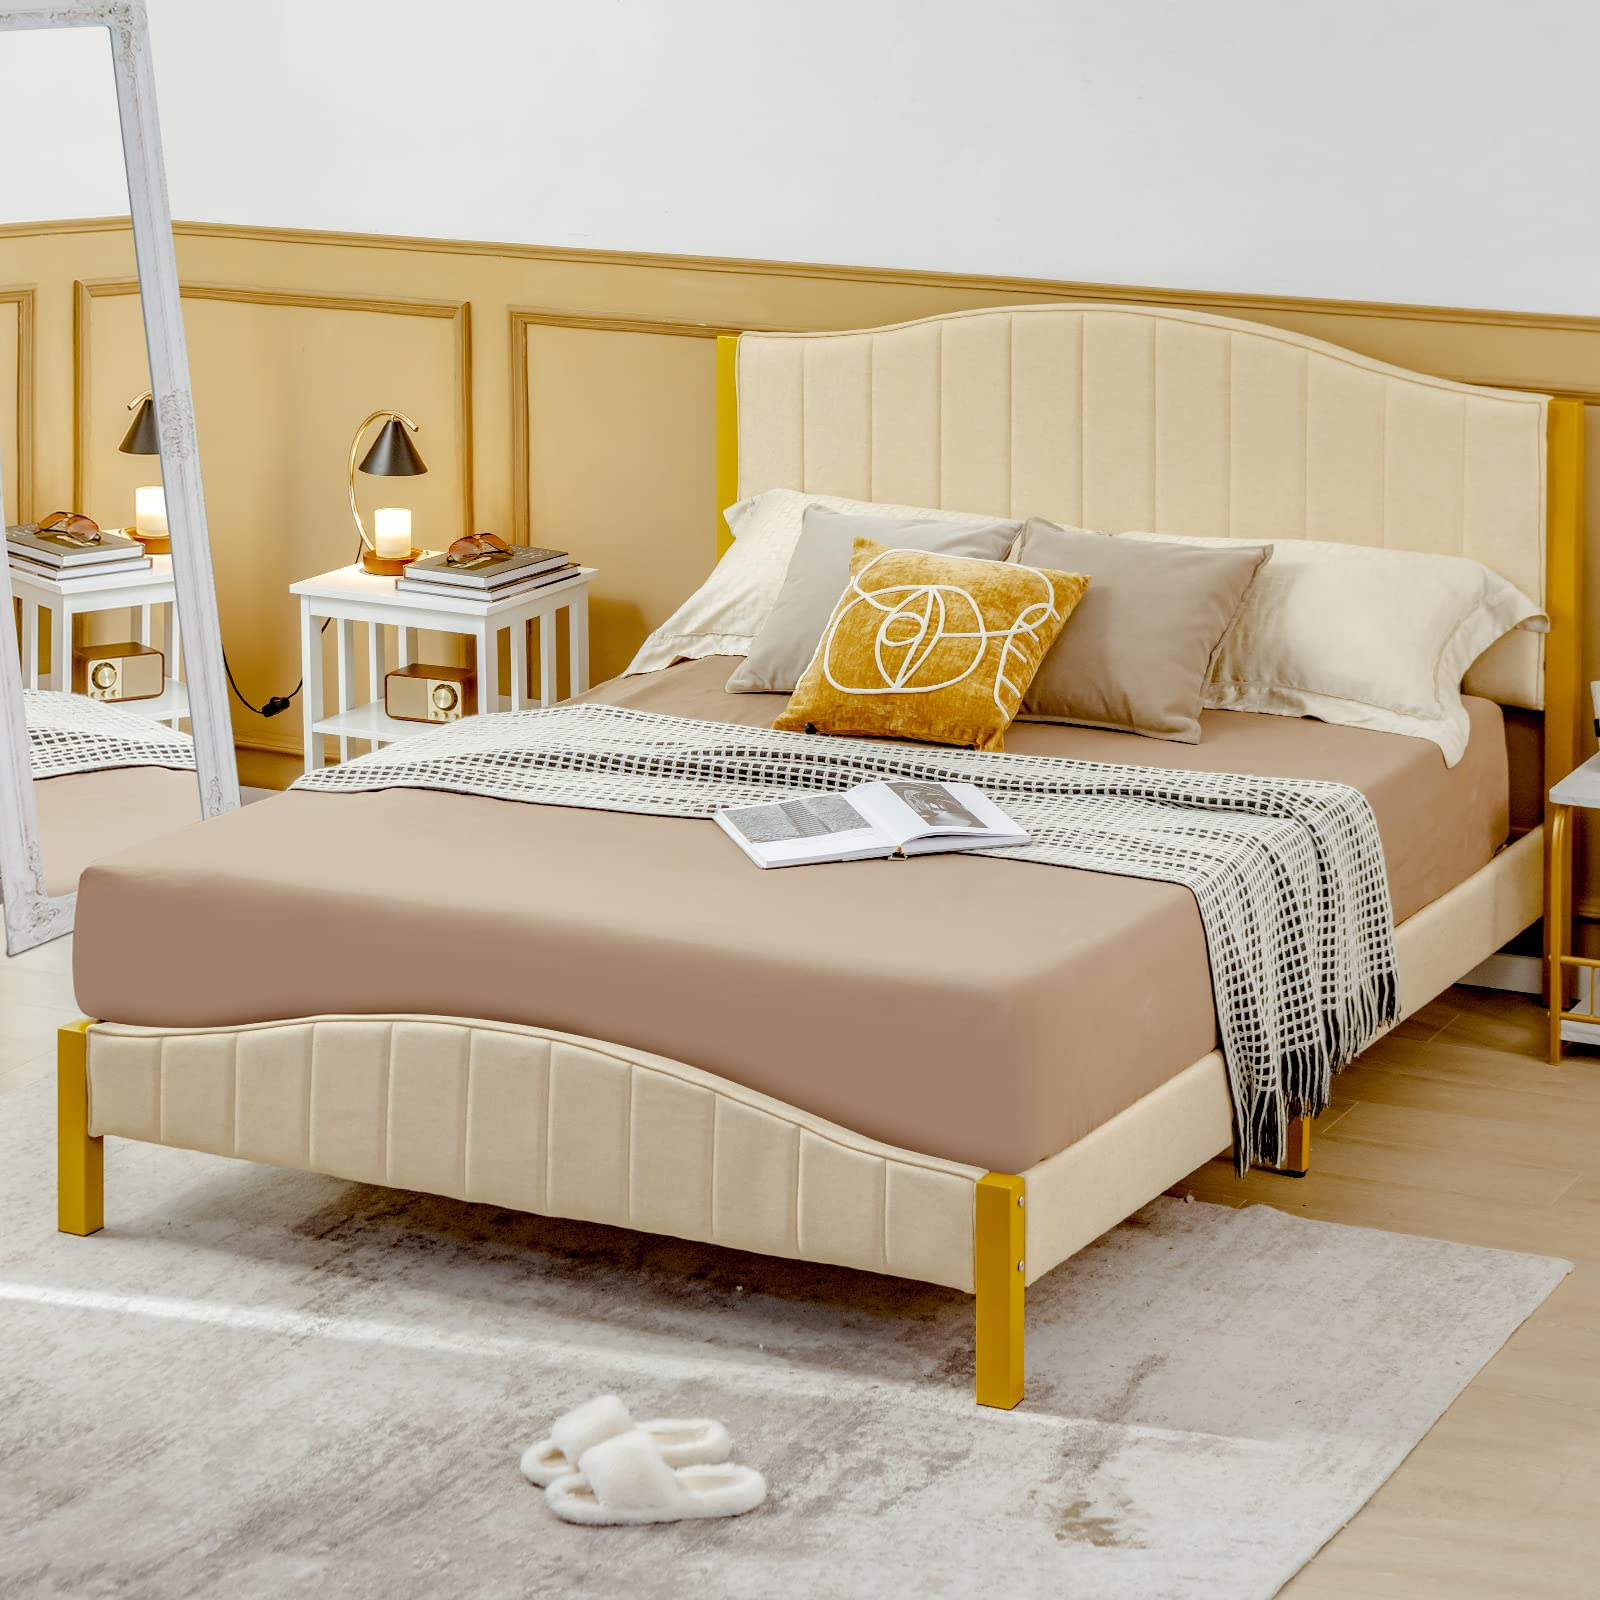 Giantex Full Size Upholstered Bed Frame